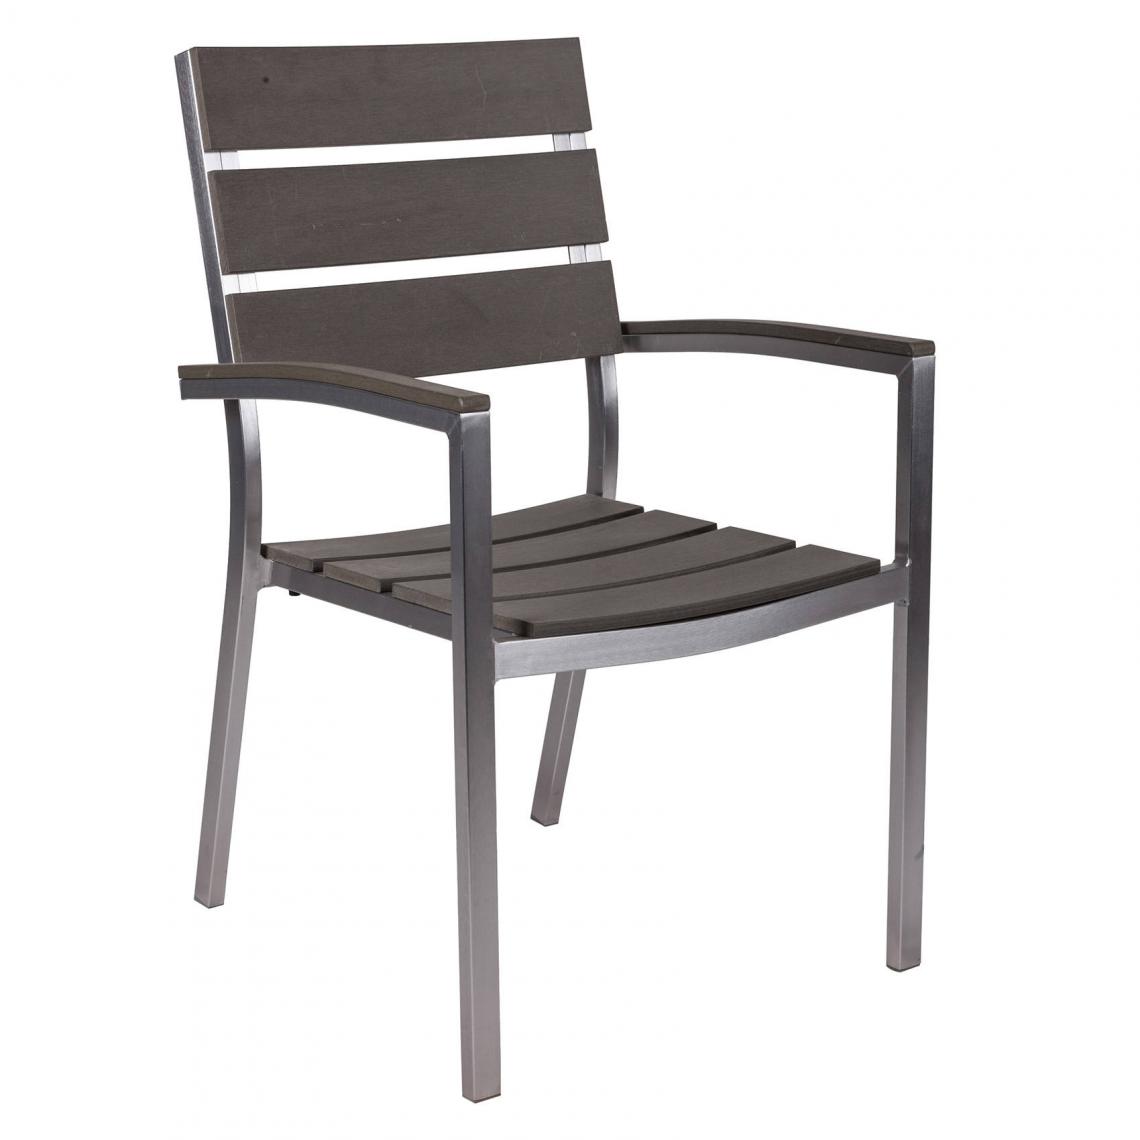 Alter - Chaise empilable en acier et polywood, coloris gris, 55 x 52 x h88 cm - Chaises